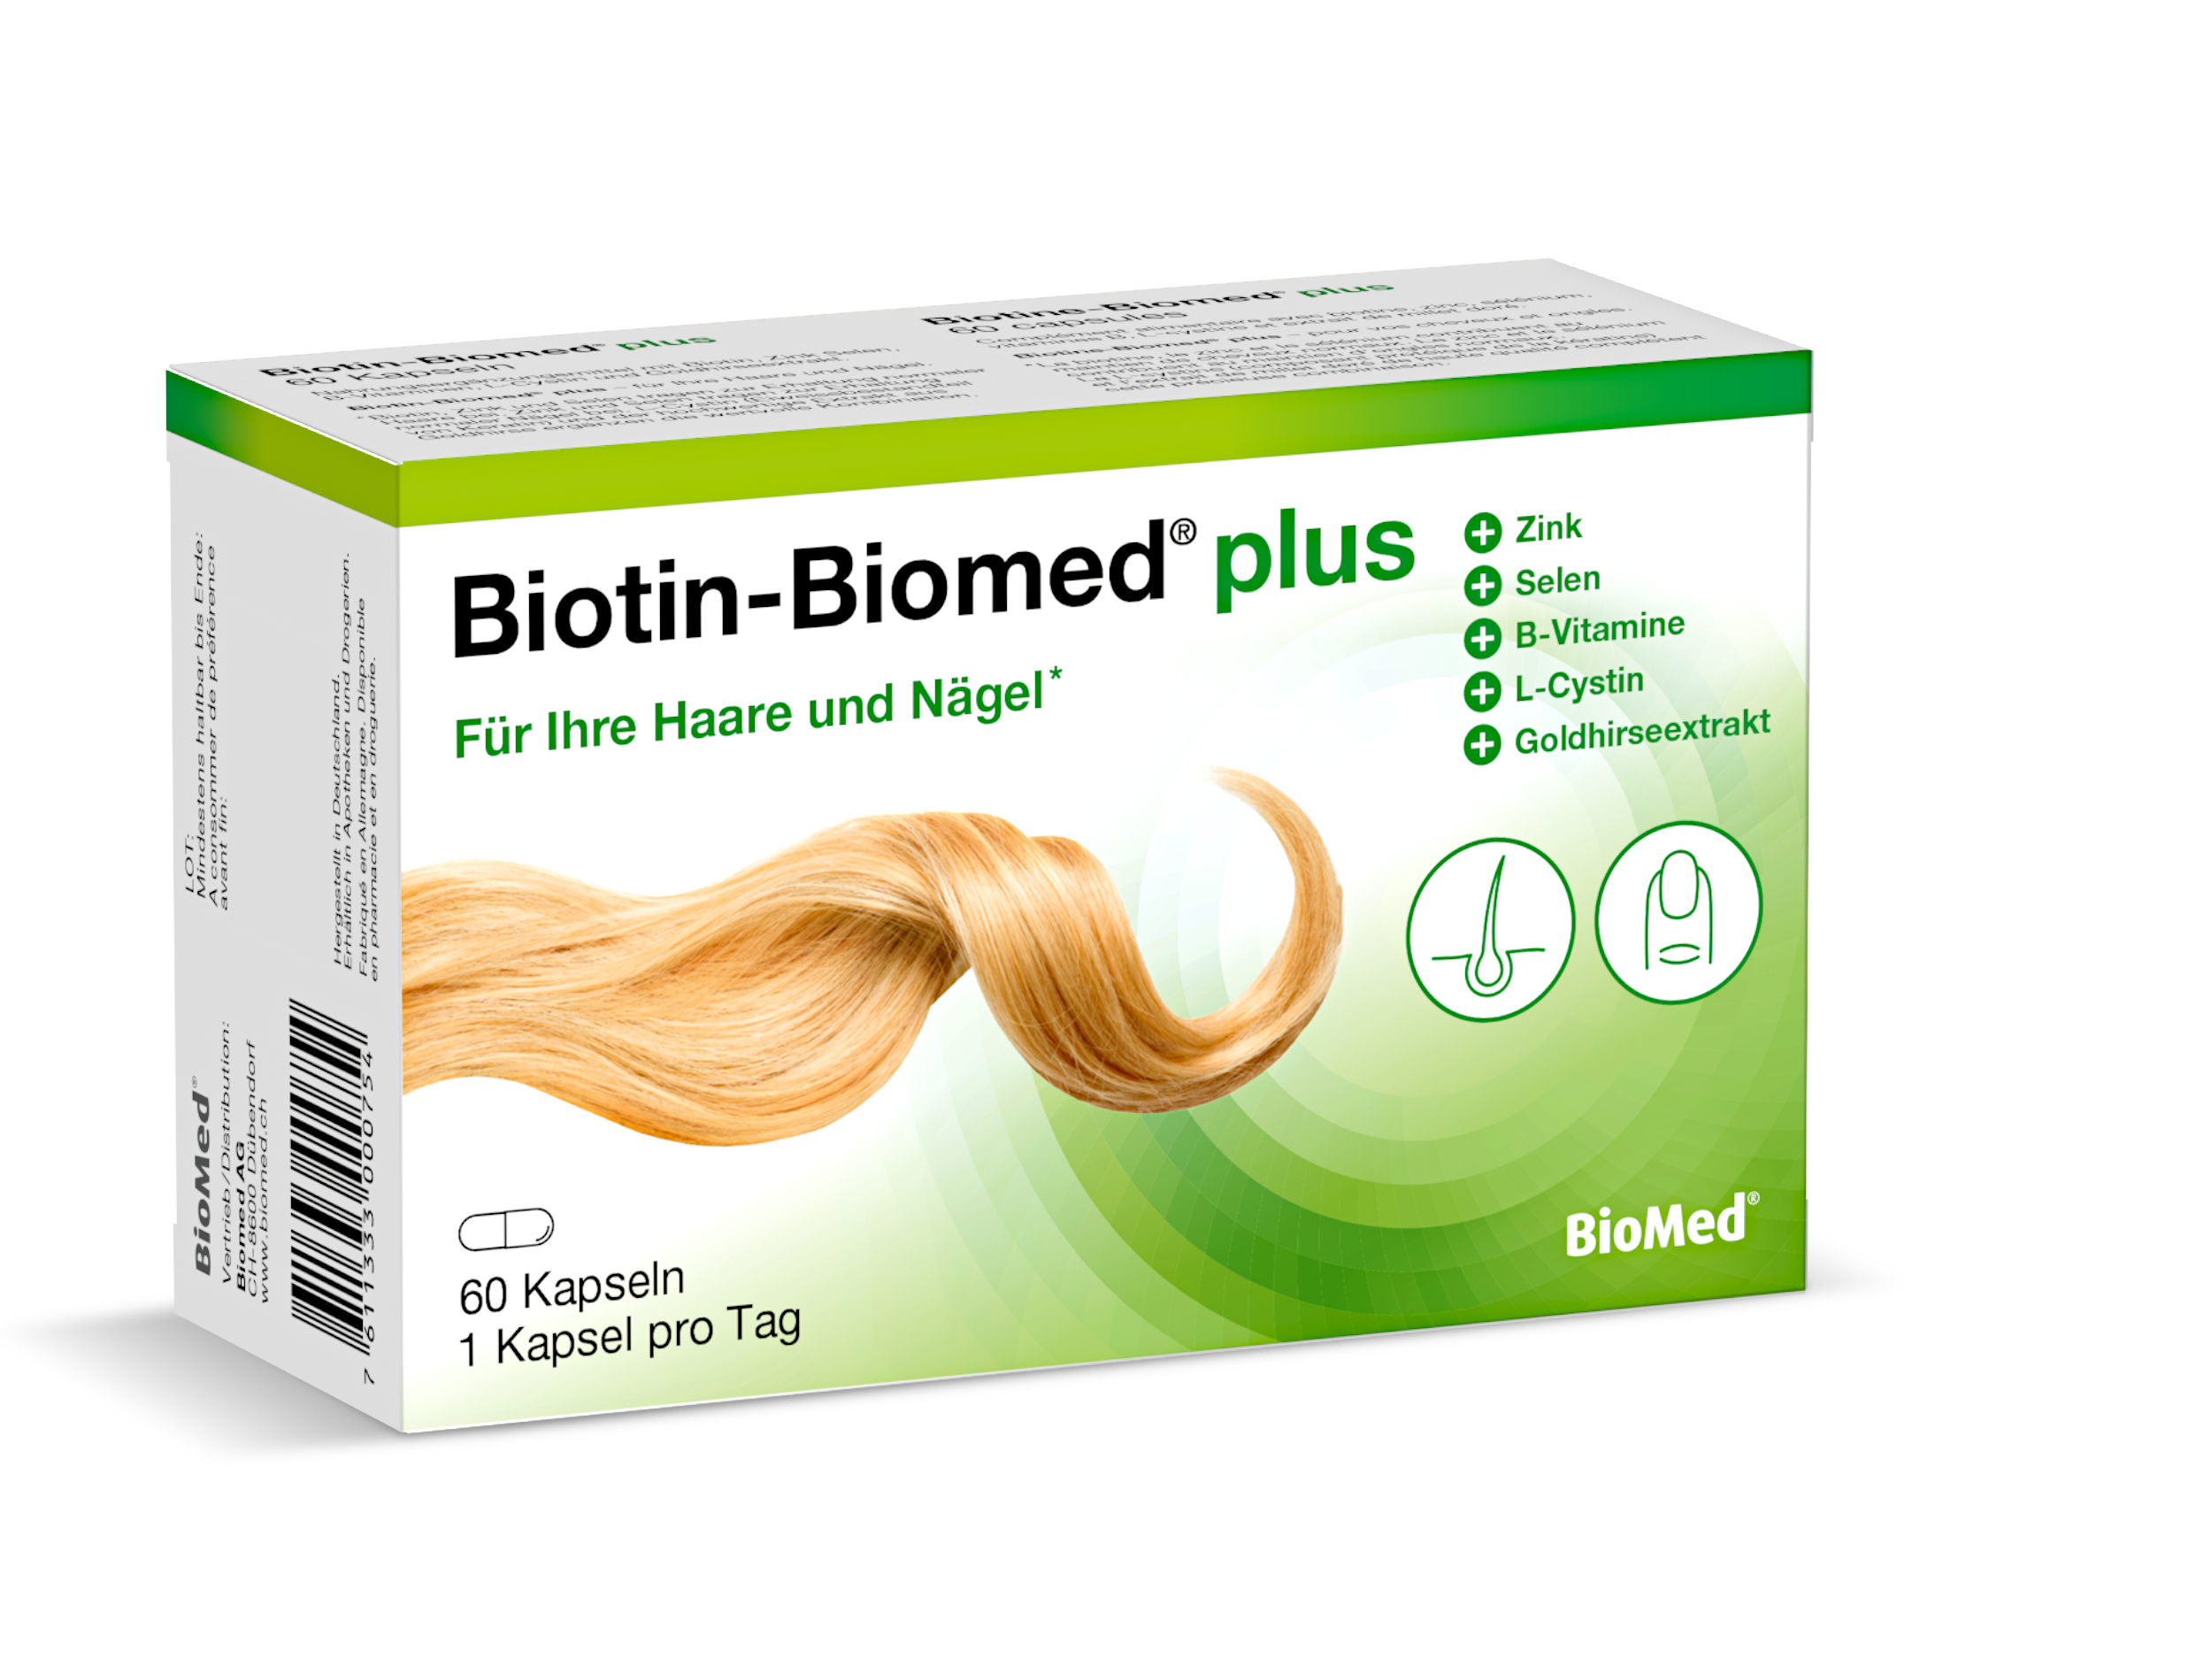 Biotin-Biomed plus